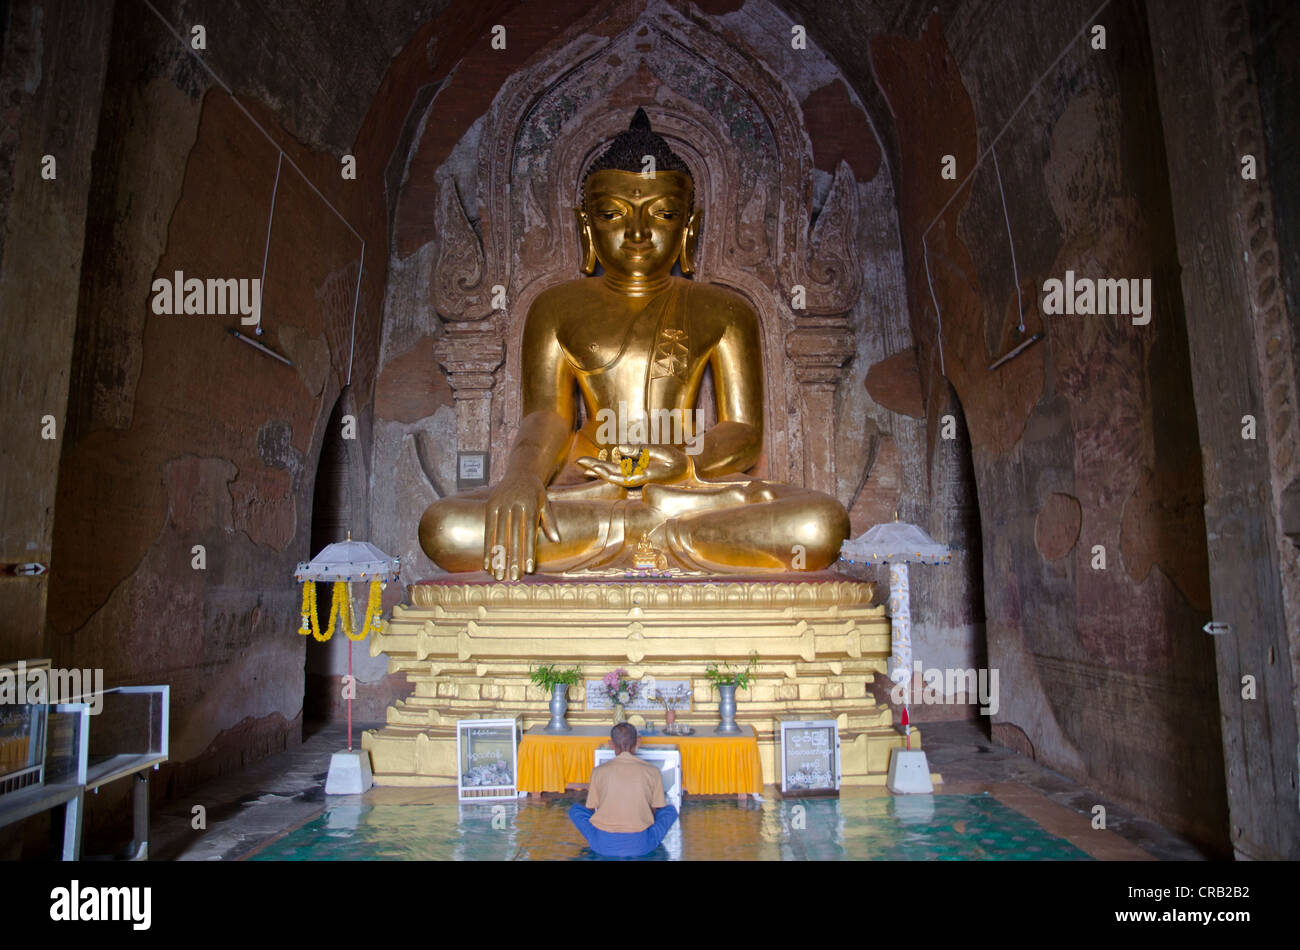 Il buddismo, dorato Buddha seduto figura nella pagoda del tempio Htilominlo dal XIII secolo, uno degli ultimi grandi templi Foto Stock